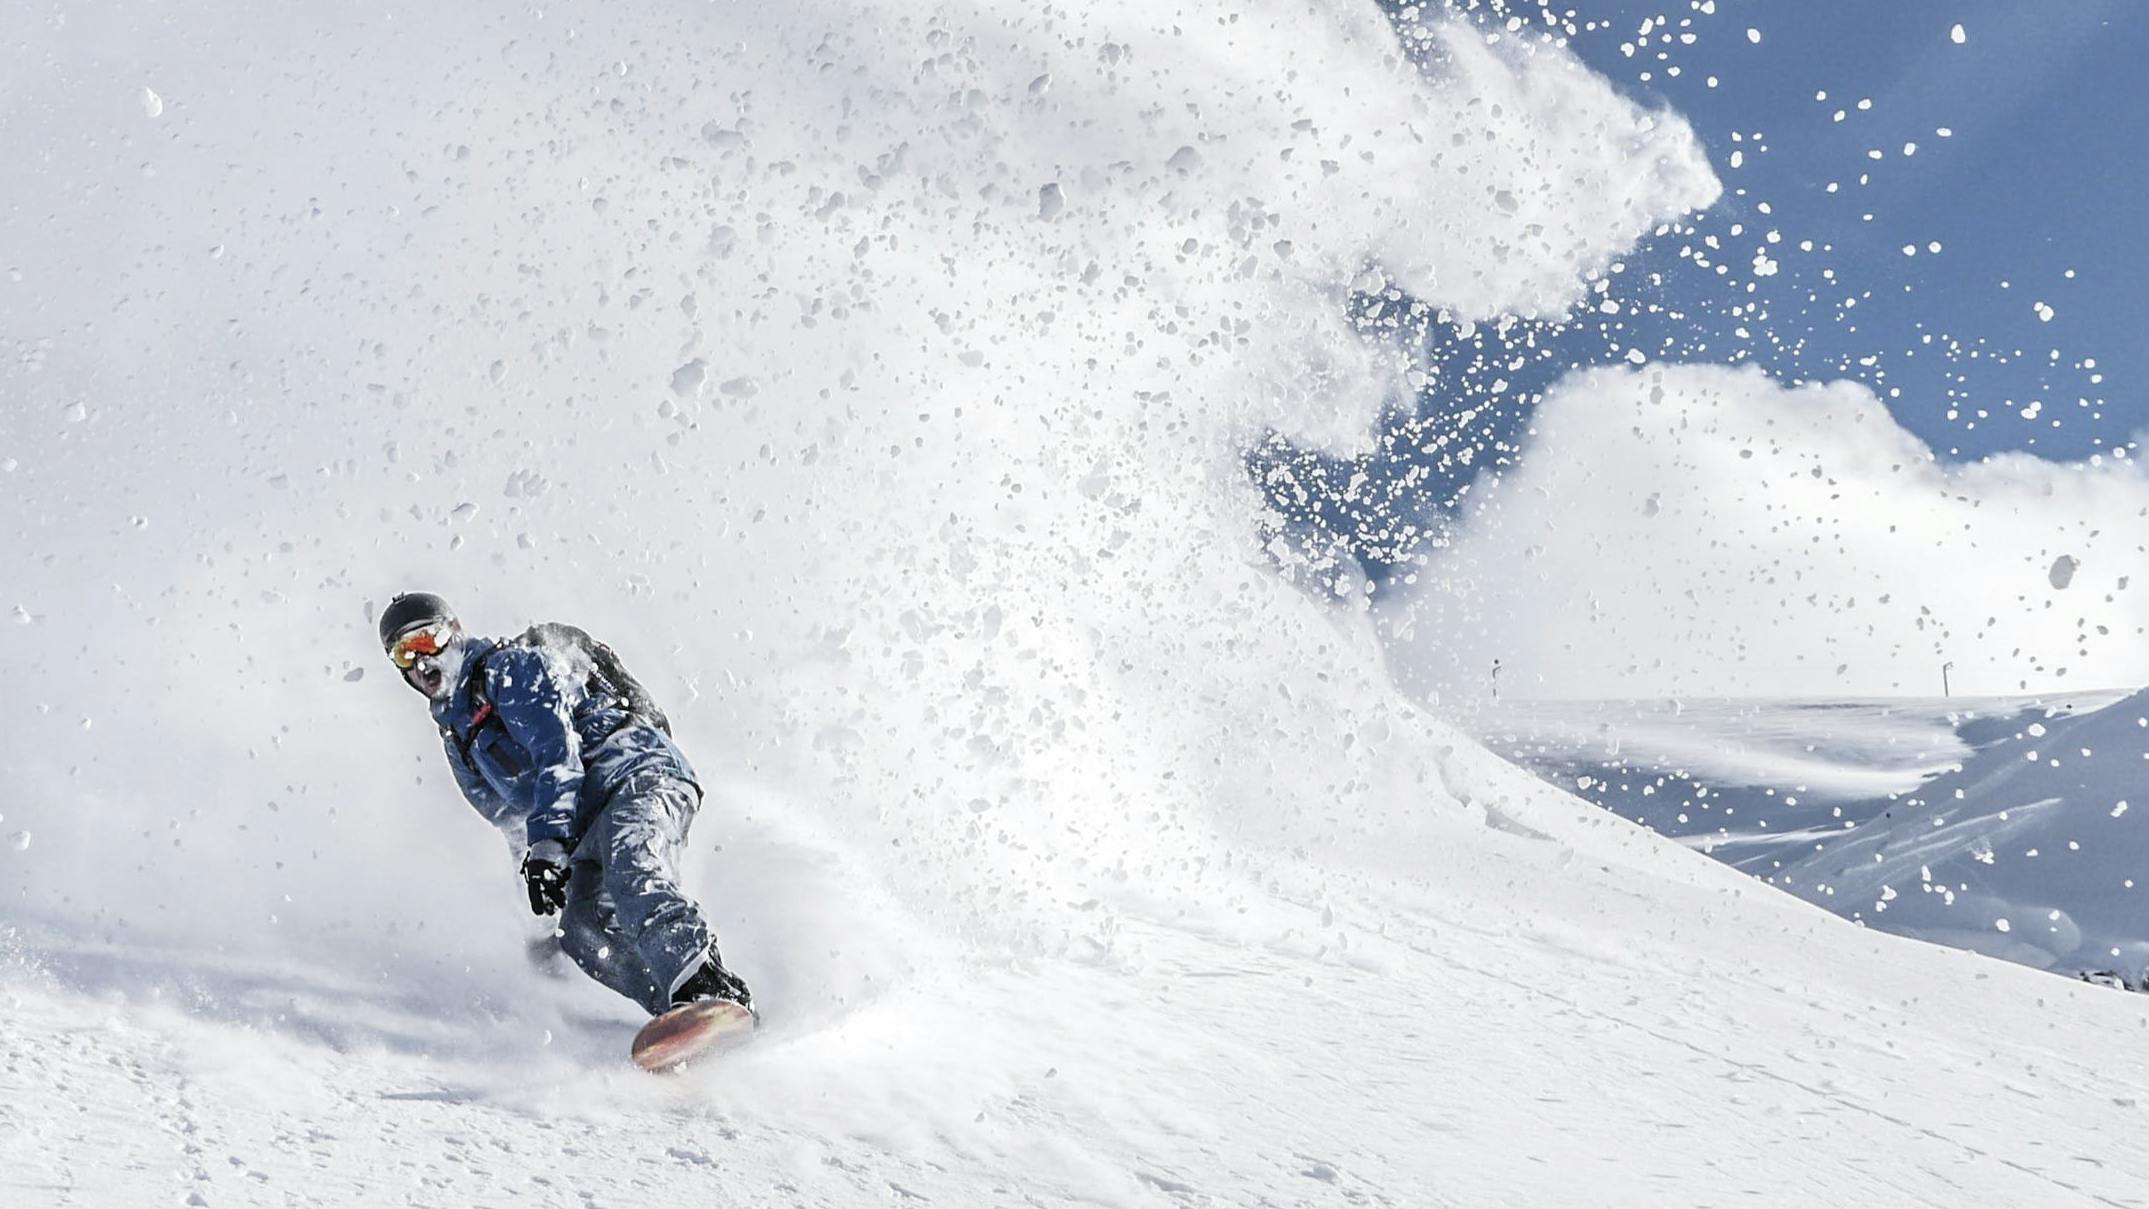 Snowboarder spraying large plume of powder.